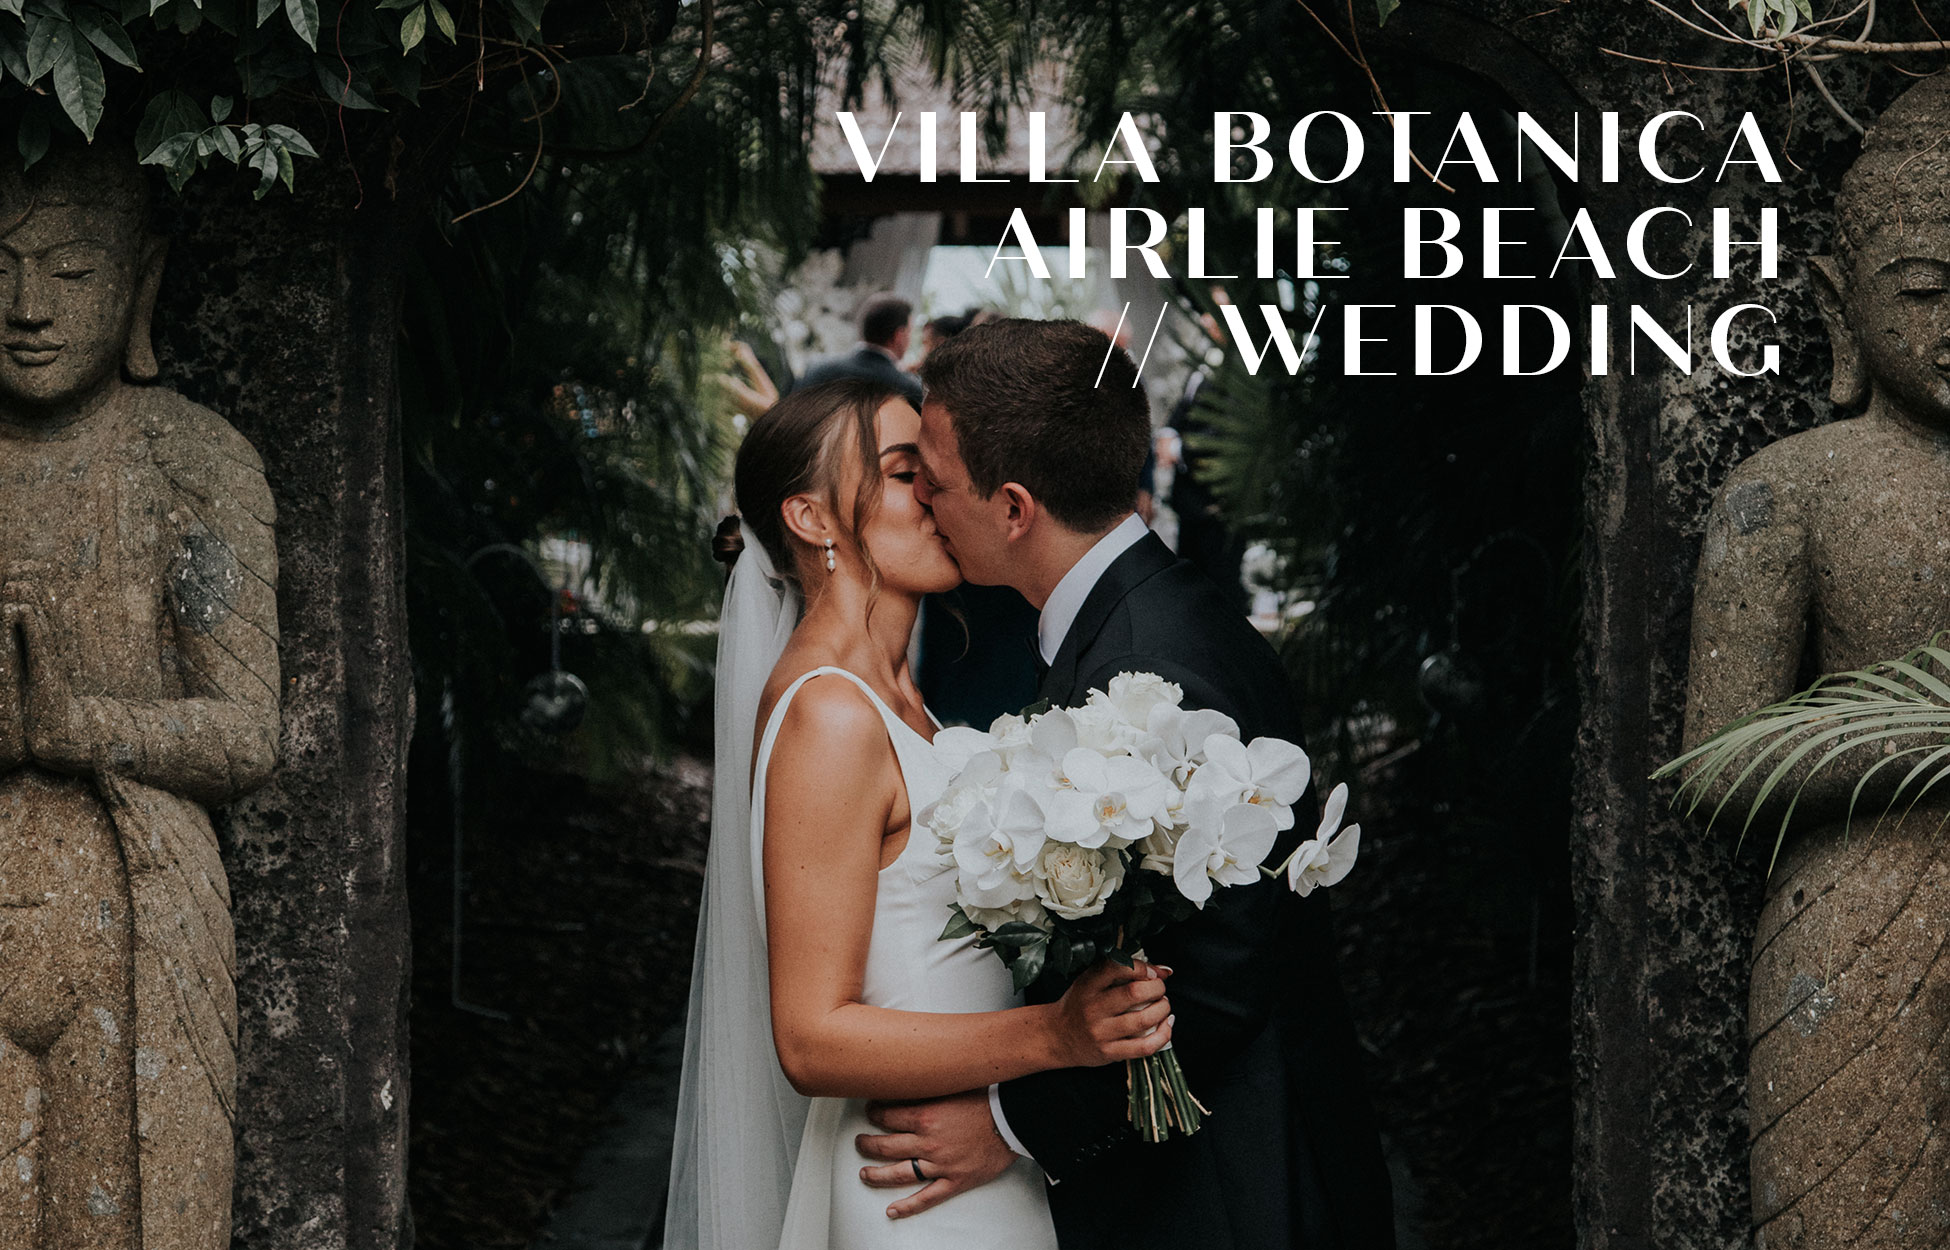 Monique-Kieren-Wedding-Villa-Botanica-Airlie-Beach